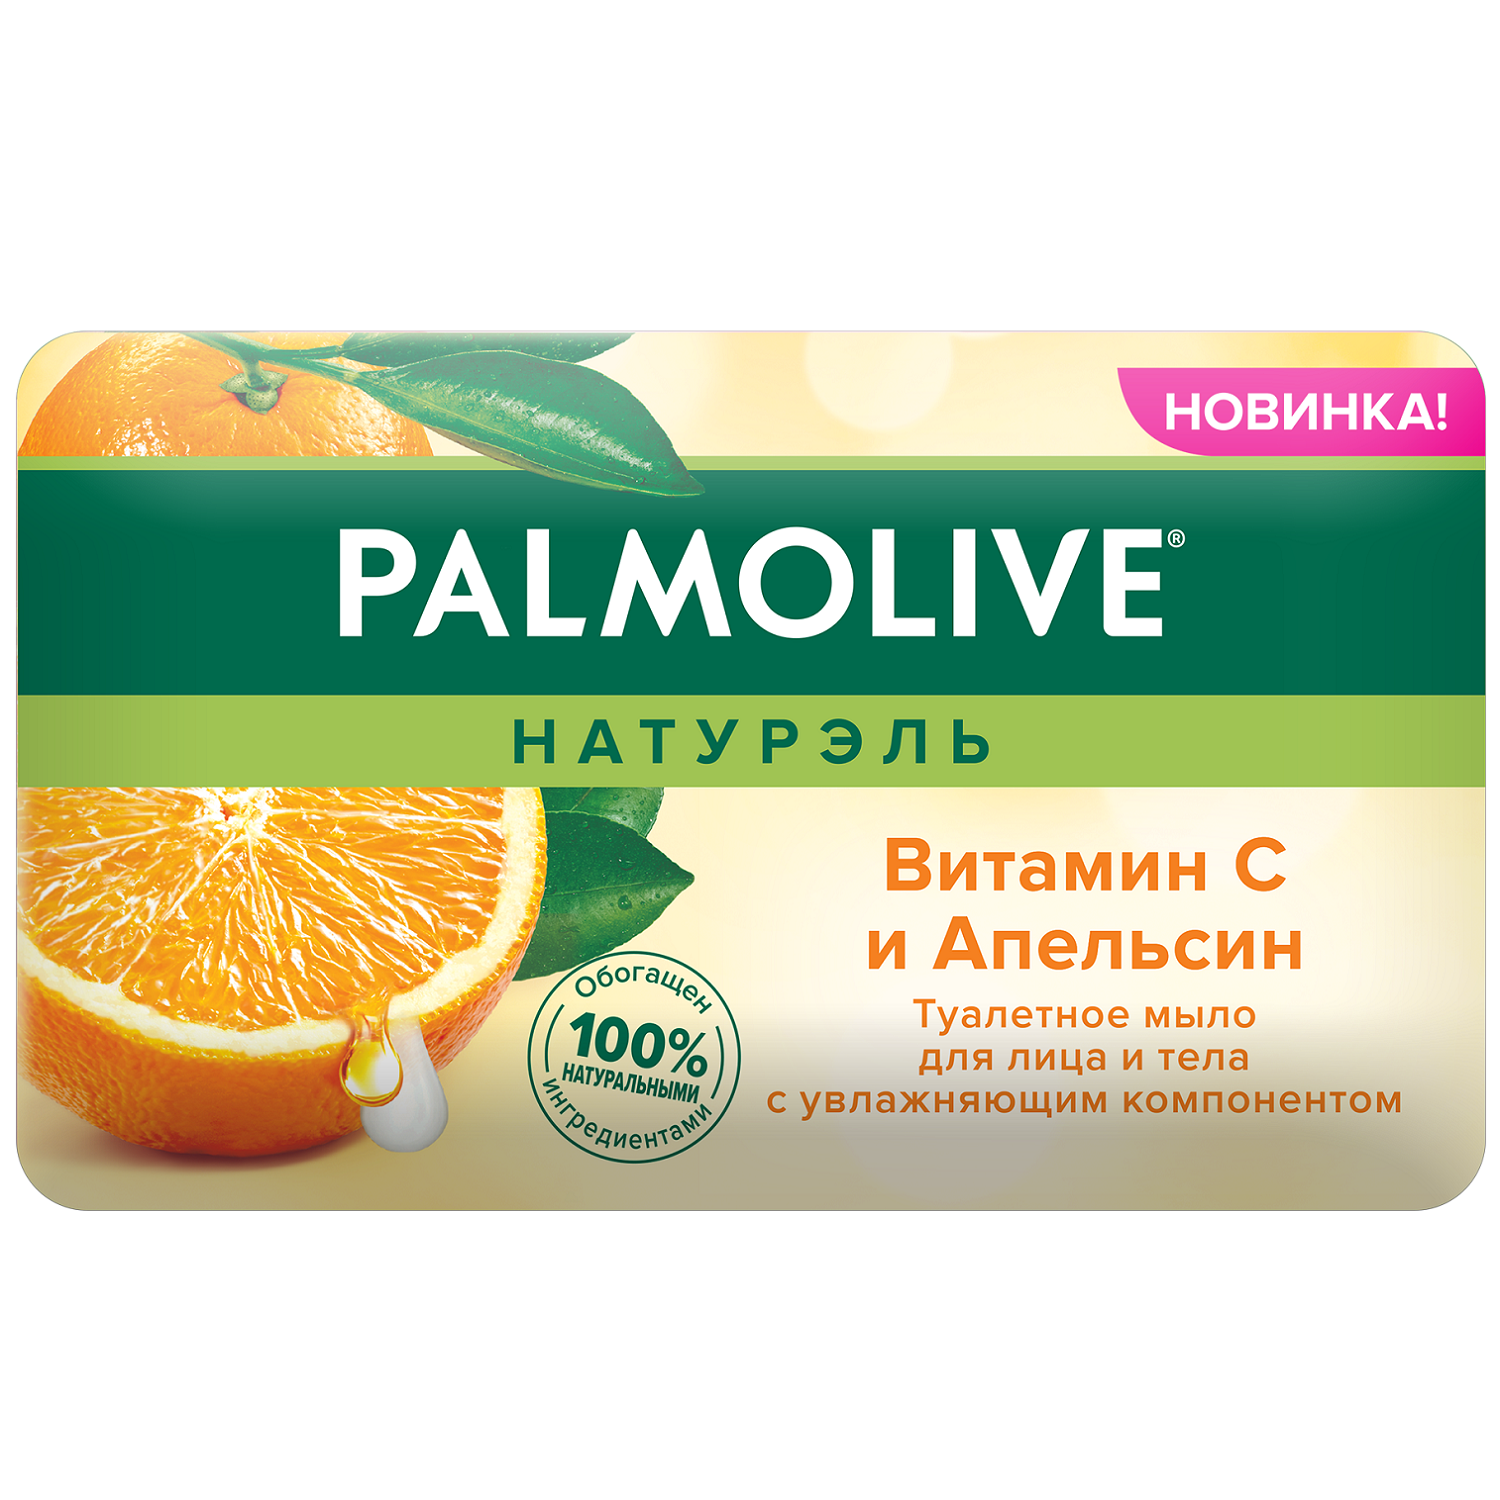 Мыло Palmolive с апельсином витамином С и увлажняющим компонентом 150г - фото 1